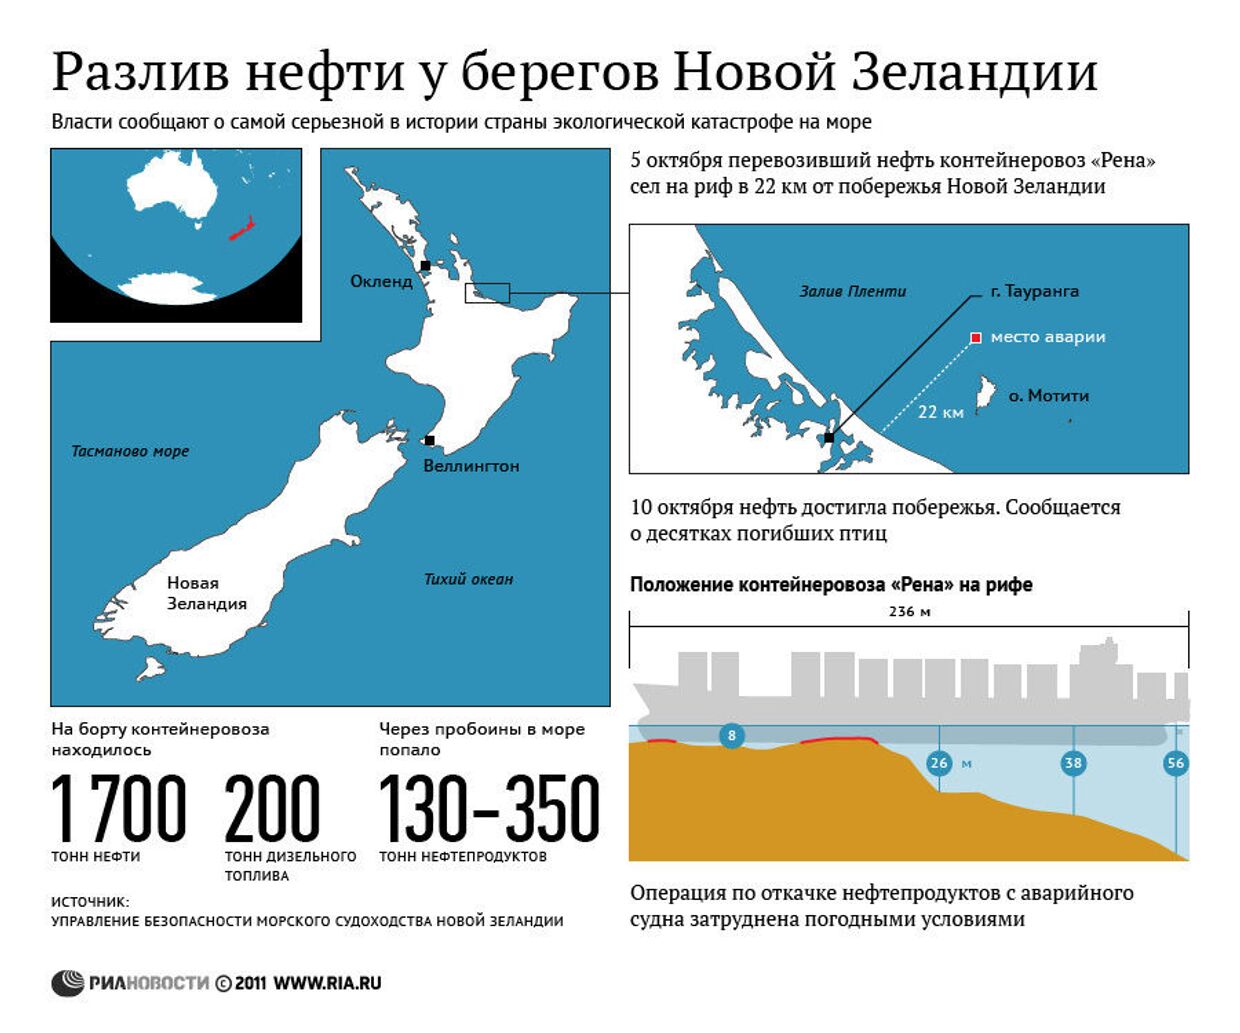 Разлив нефти у берегов Новой Зеландии